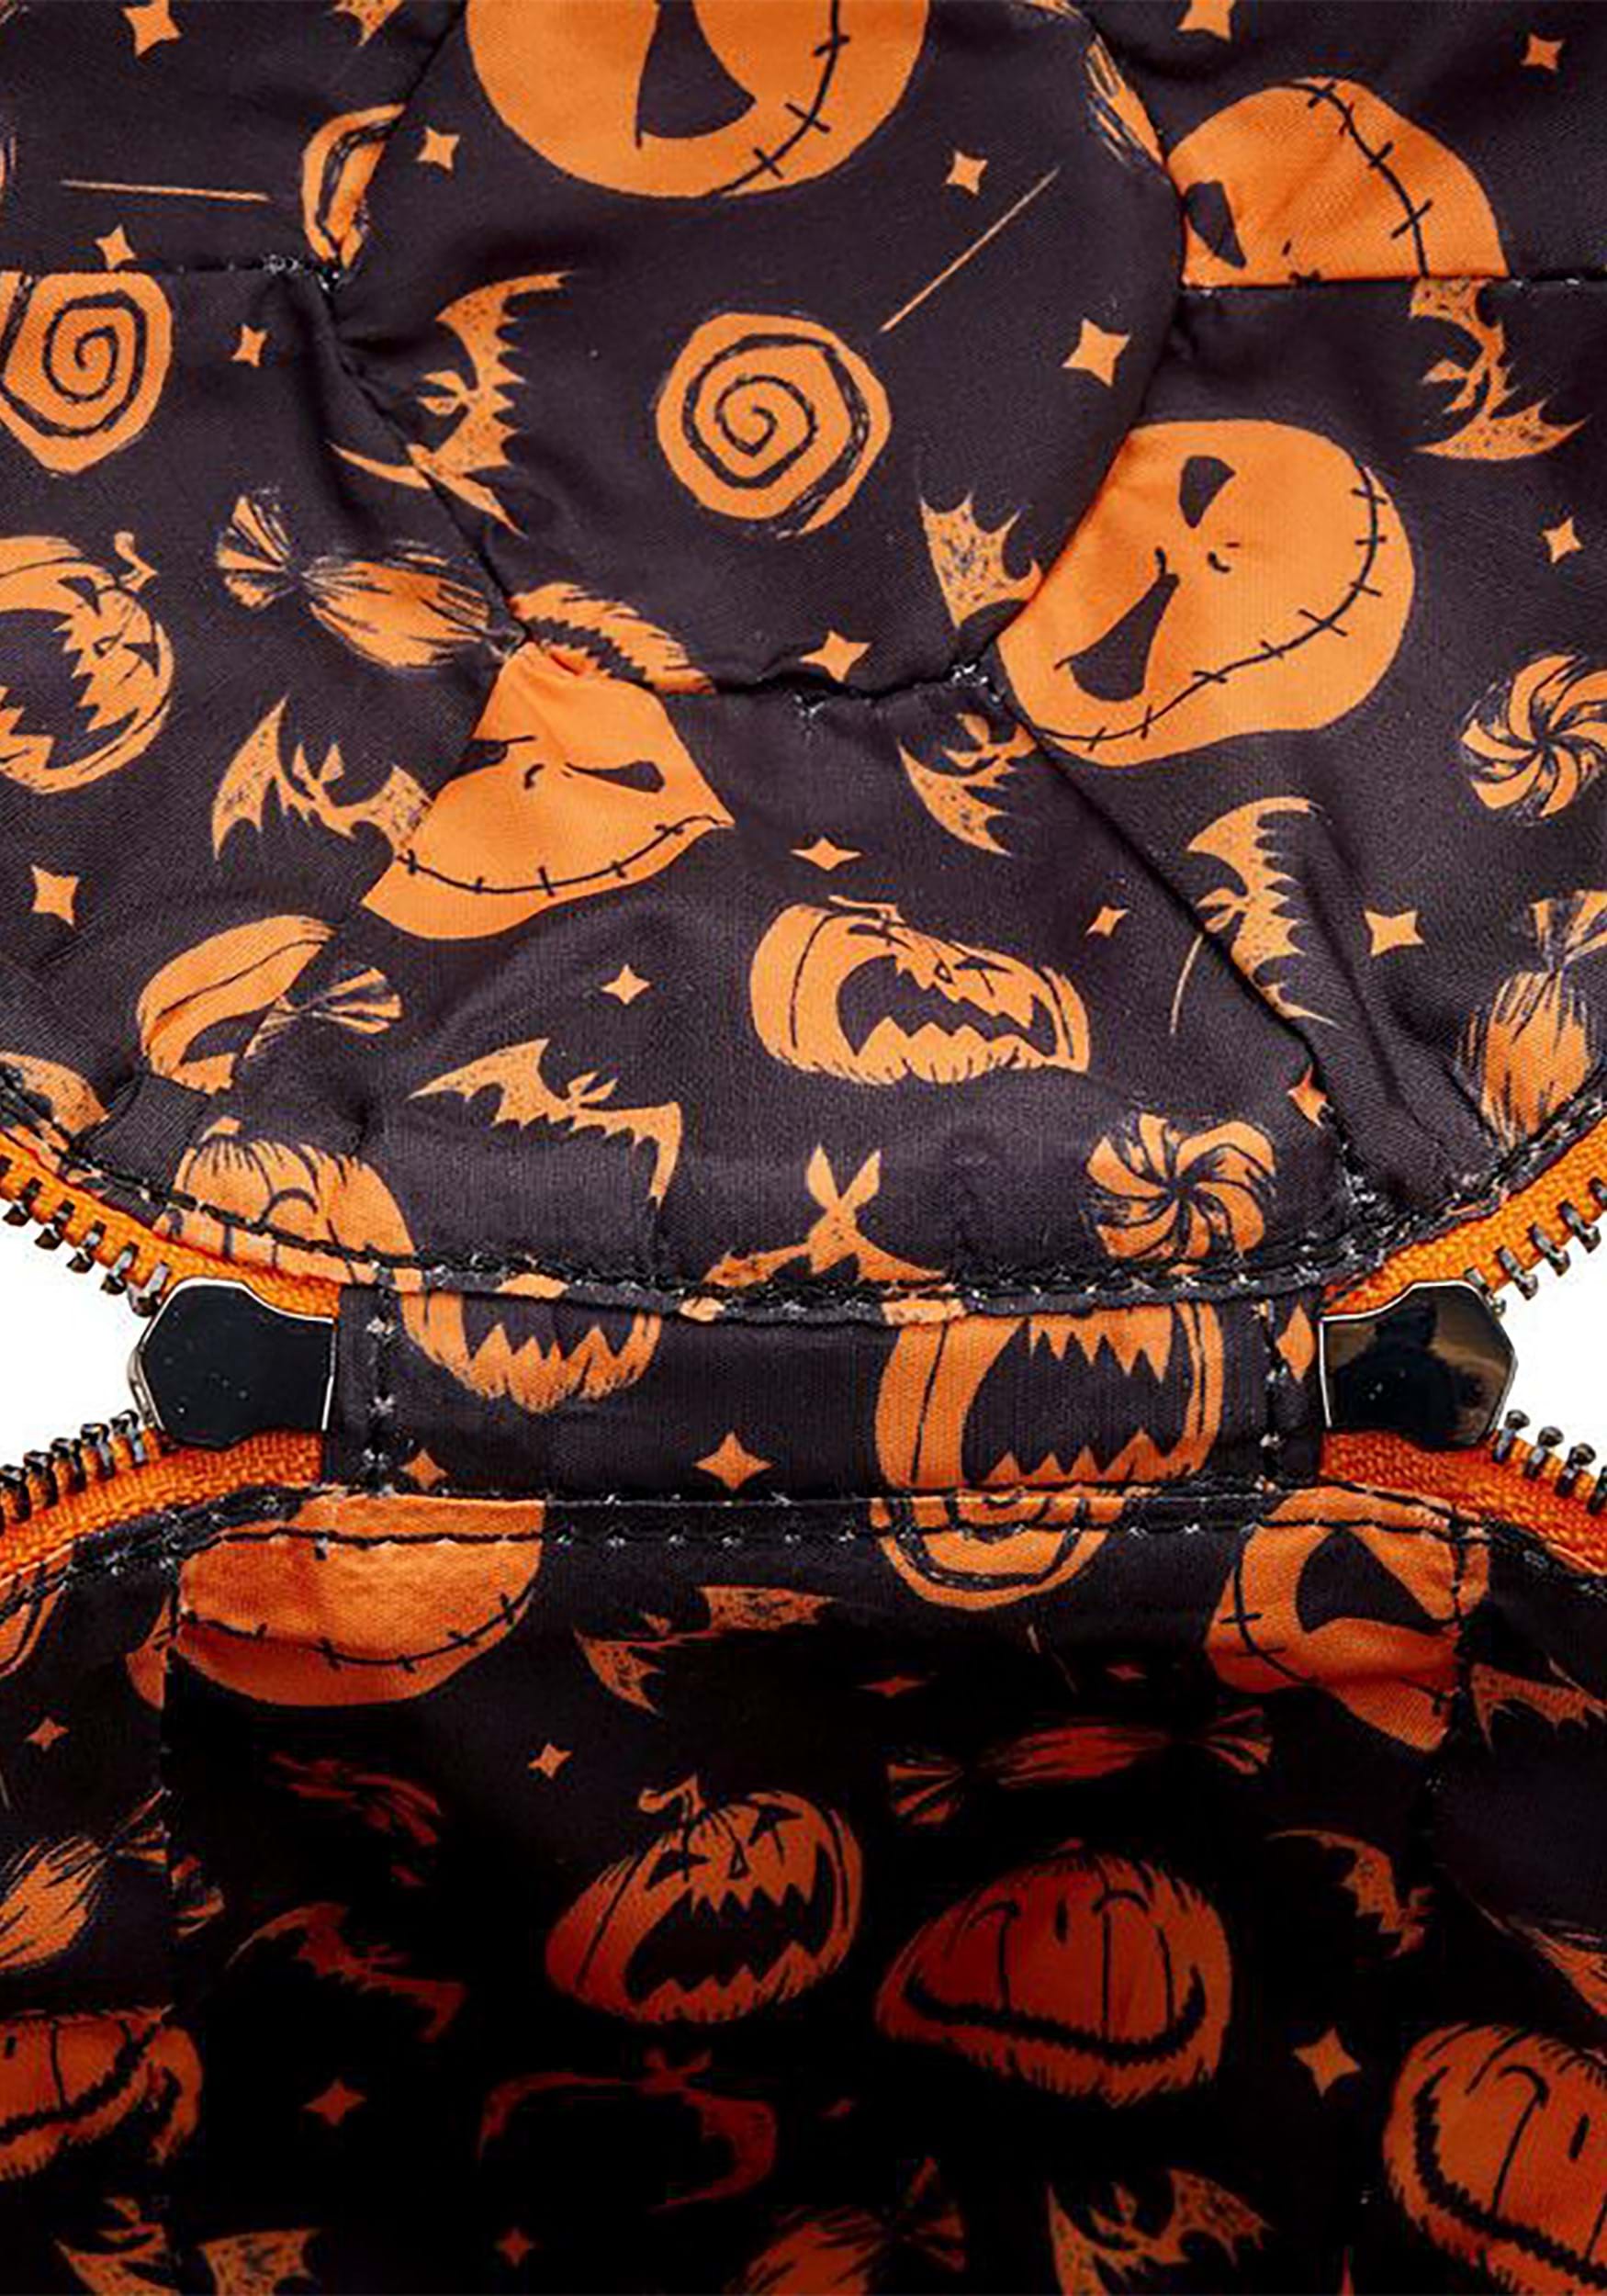 Glow in the Dark Jack O Lantern Pumpkin Crossbody Bag in Vinyl –  www.